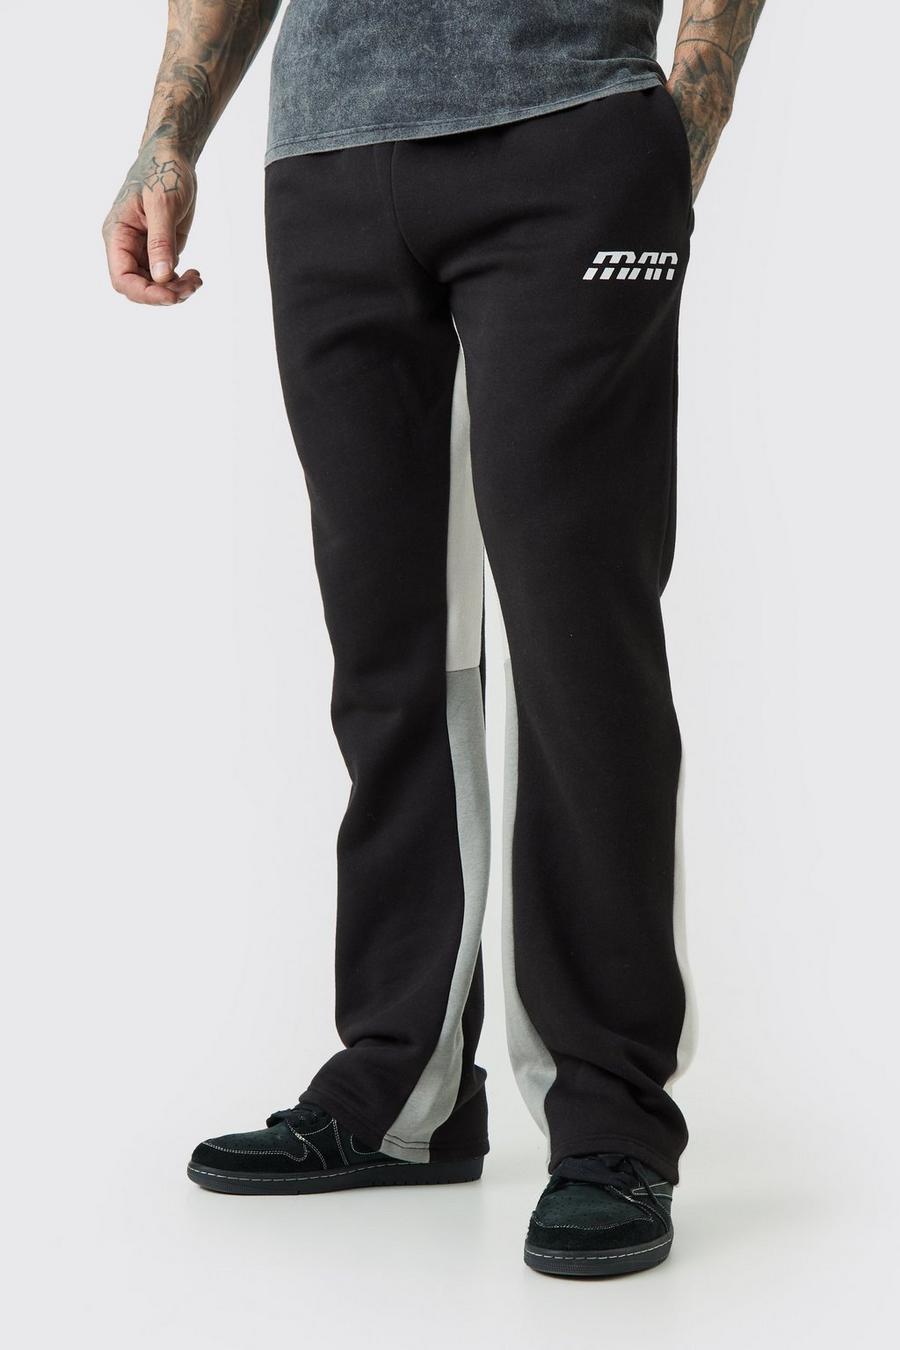 Pantalón deportivo Tall ajustado con colores en bloque y refuerzos, Black image number 1